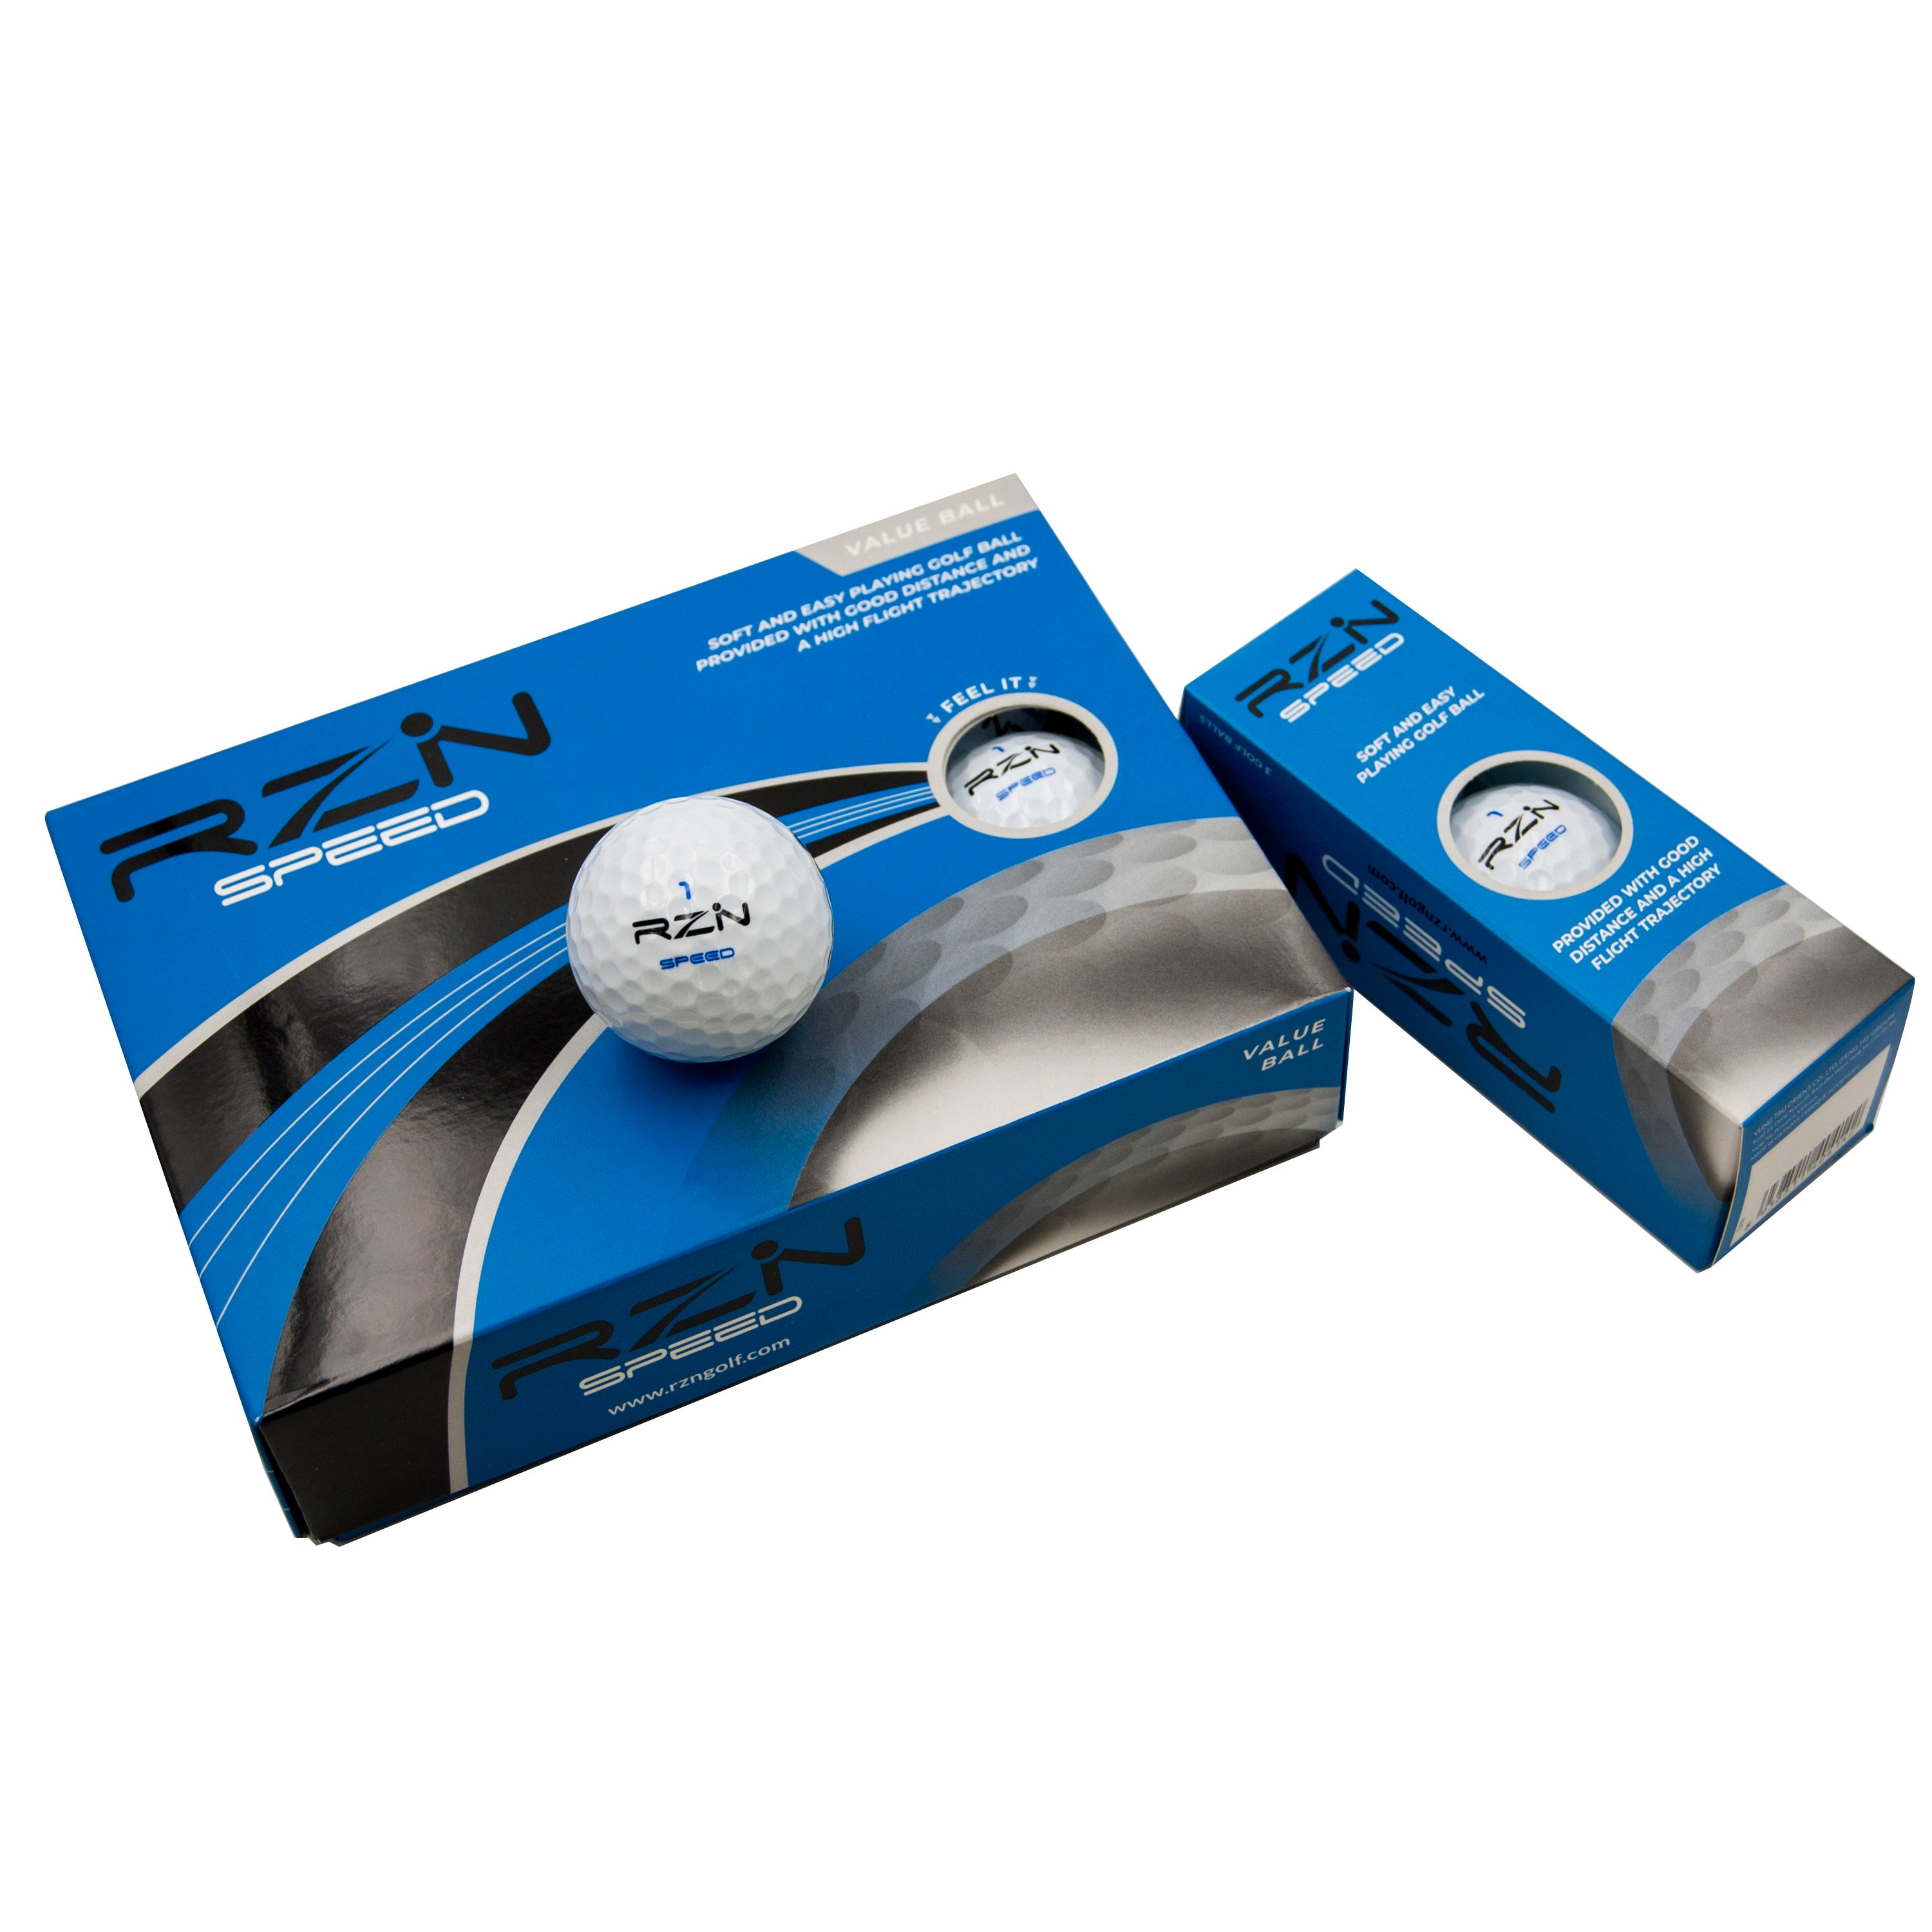 RZN Speed Golf Ball, 12 Pack